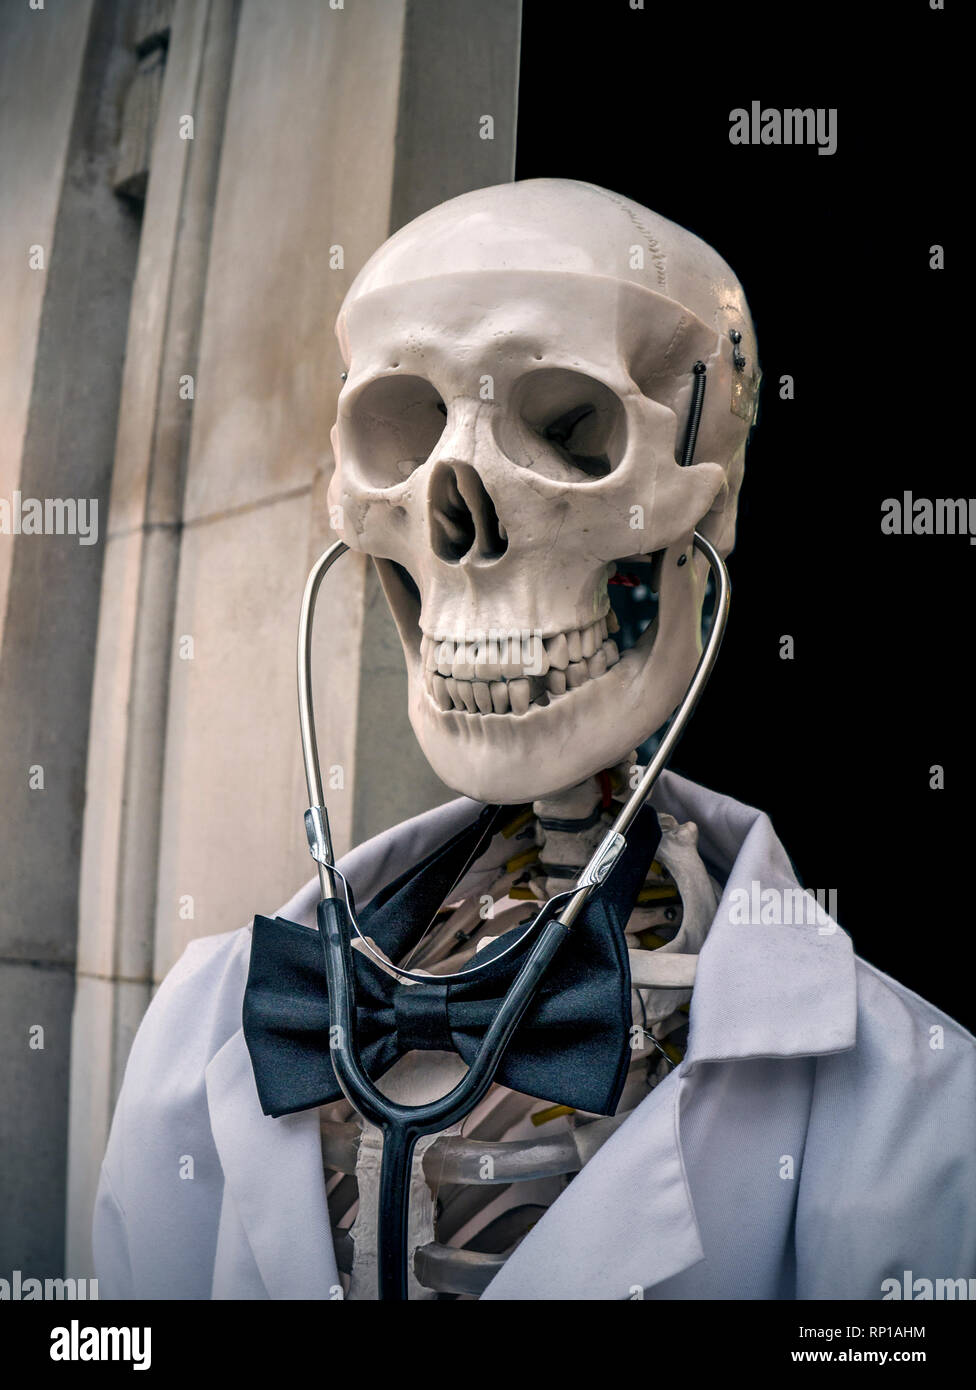 Dr DEATH CONCEPT MÉDICAL NHS LISTE D'ATTENTE skull squelette souriant vêtu  de médecins manteau blanc et noeud papillon avec stéthoscope agissant comme  un 'Doctor Death'.Un rappel humoristique à l'extérieur d'un établissement  médical